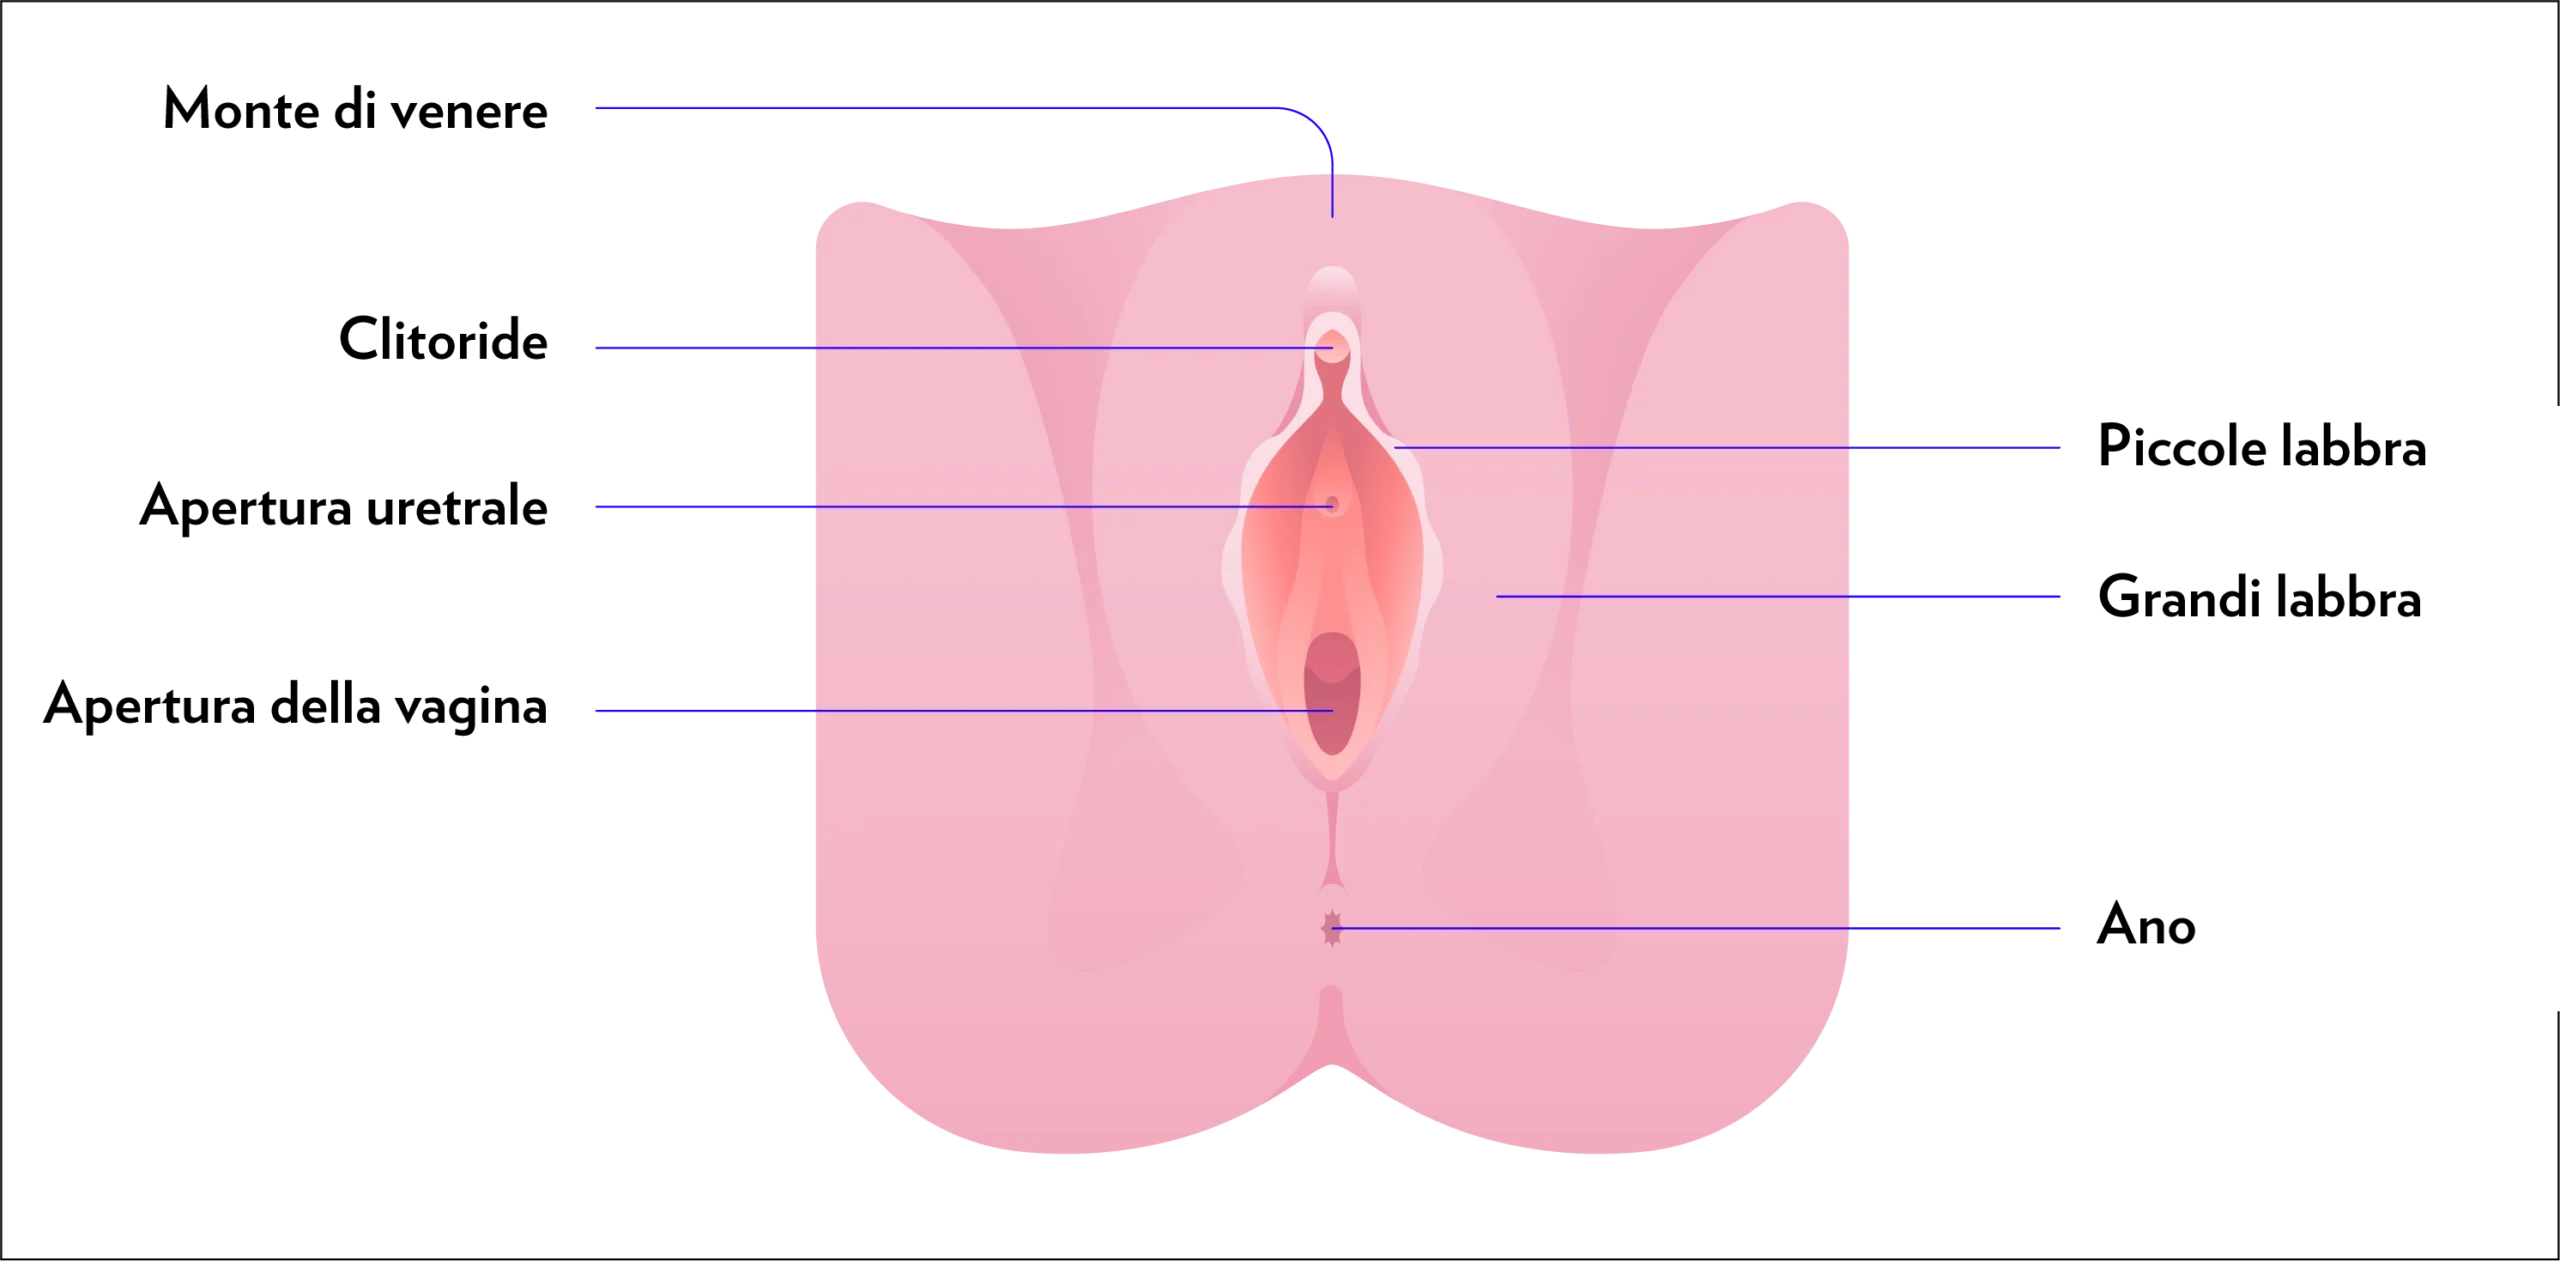 Grafico che mostra le componenti esterne dell'apparato genitale femminile